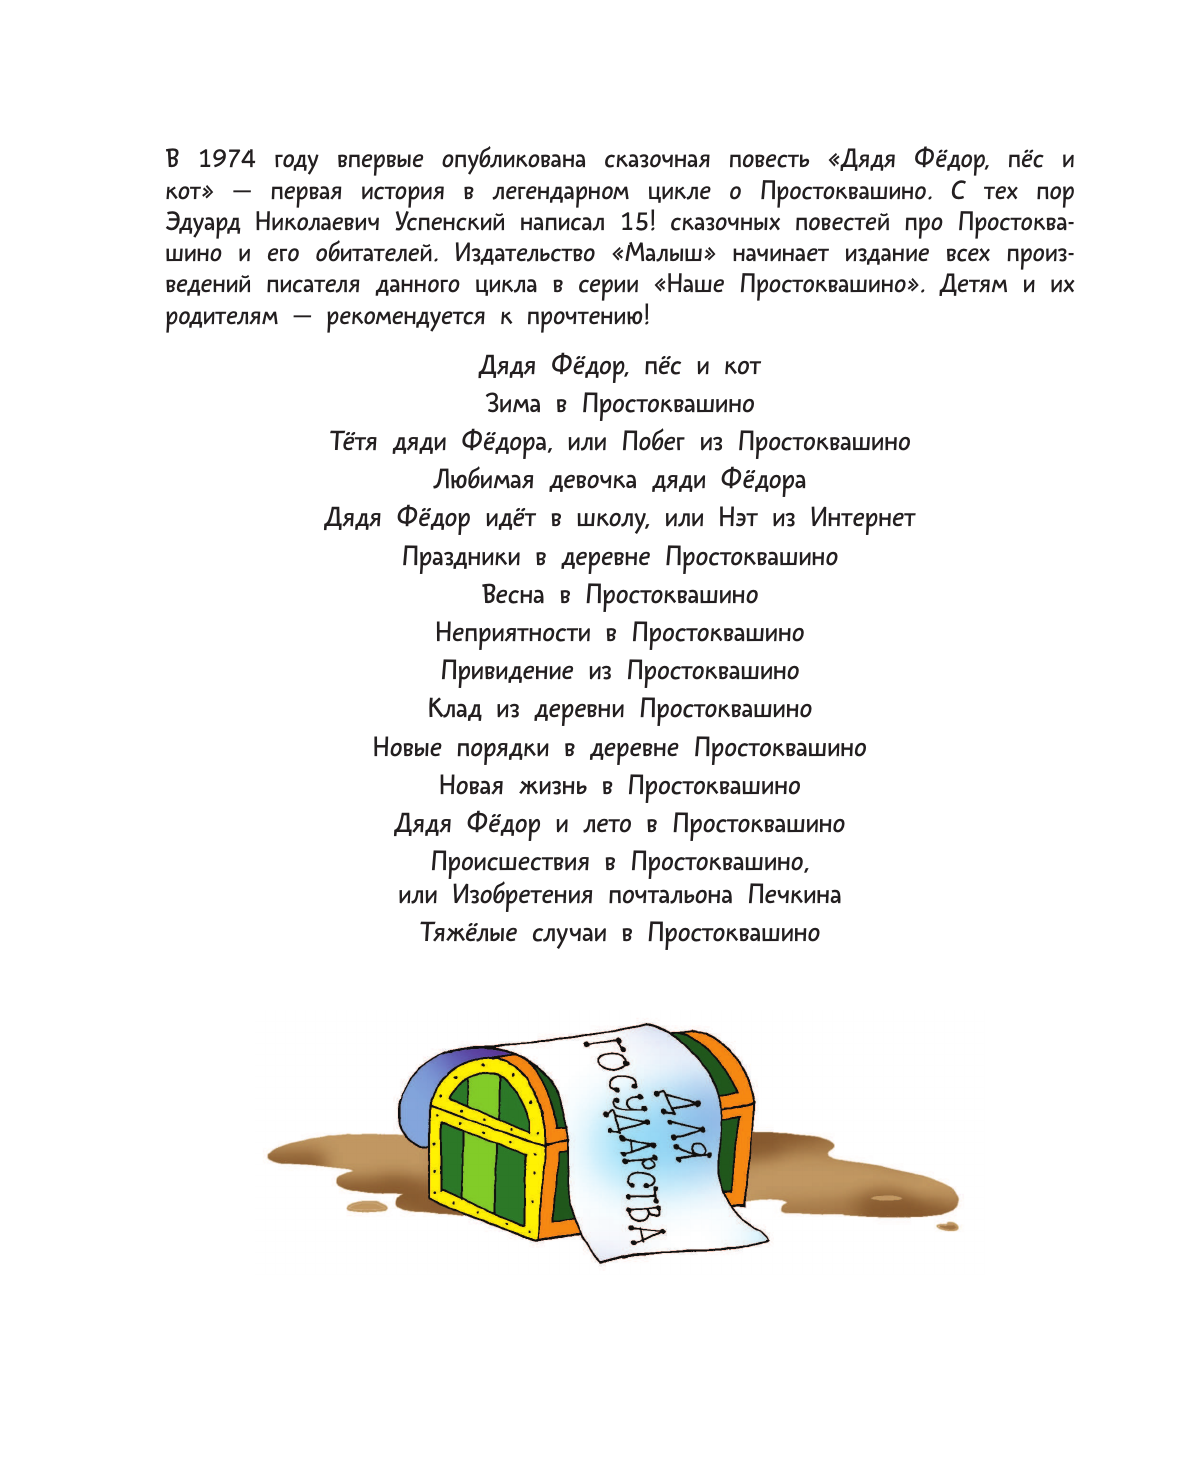 Успенский Эдуард Николаевич Клад из деревни Простоквашино - страница 2